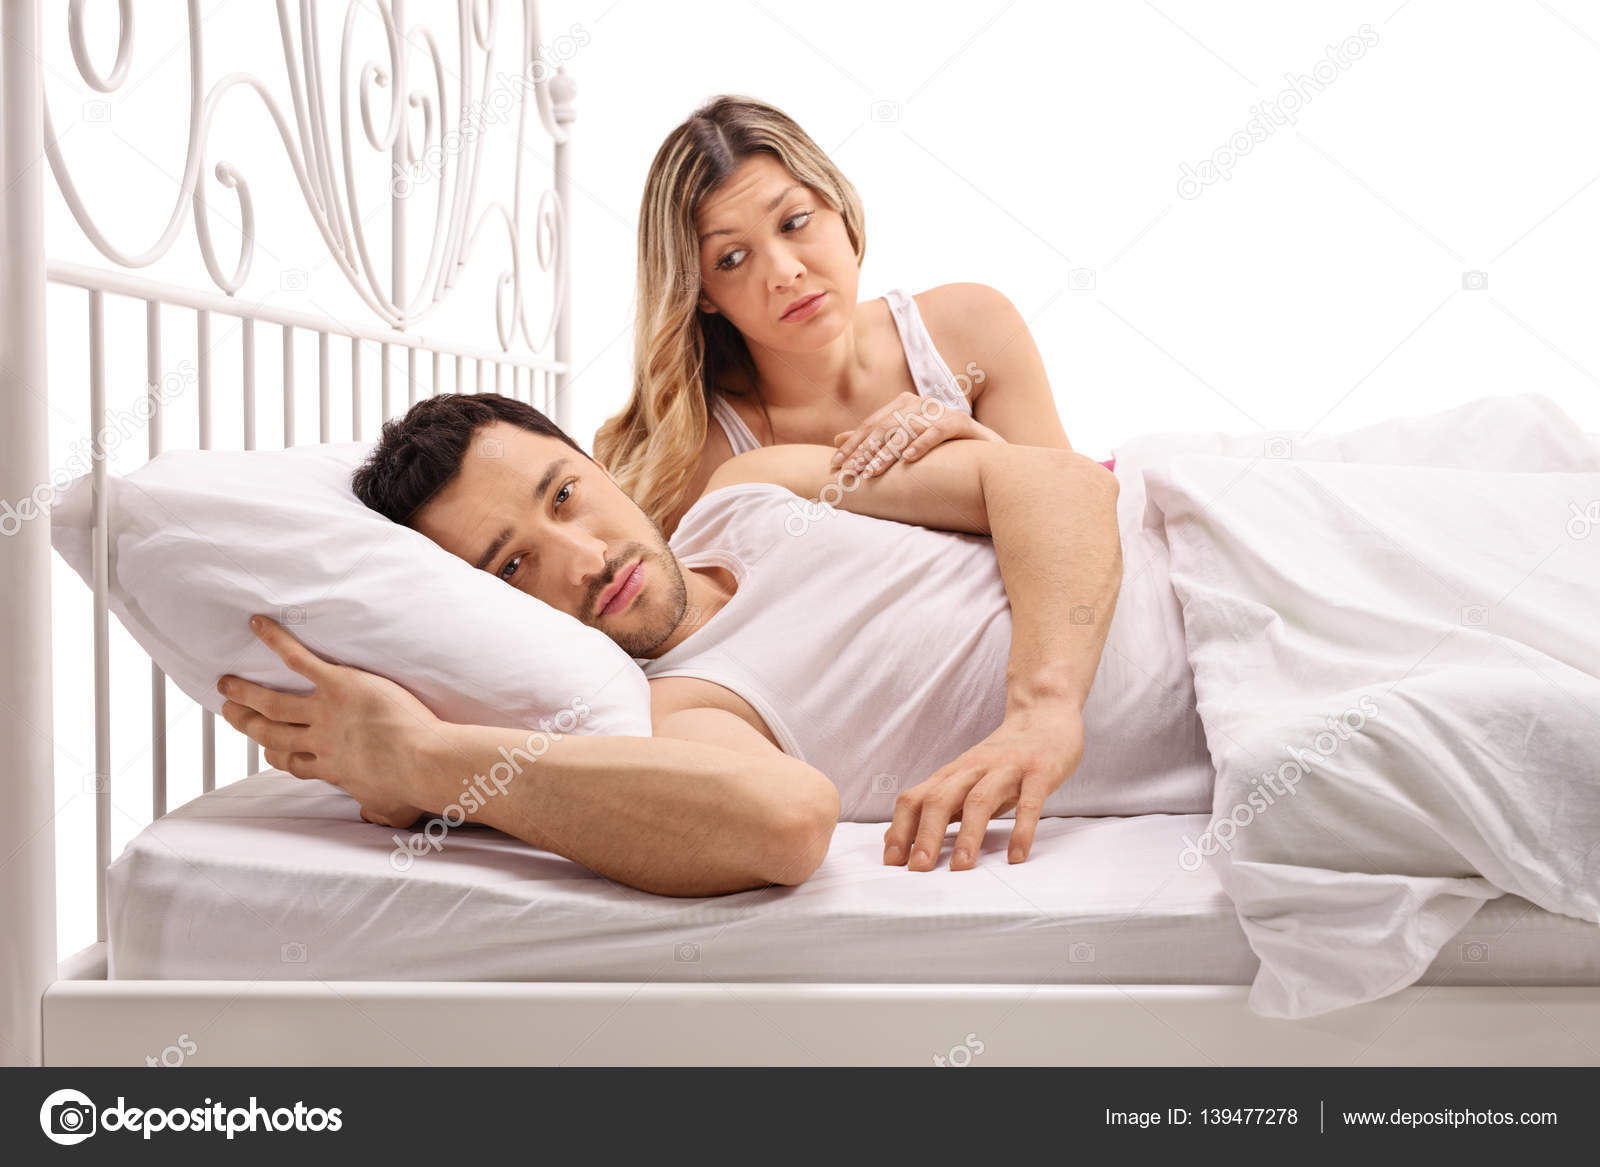 Проблемы в постели с женой: Что делать мужу, когда жена не хочет секса